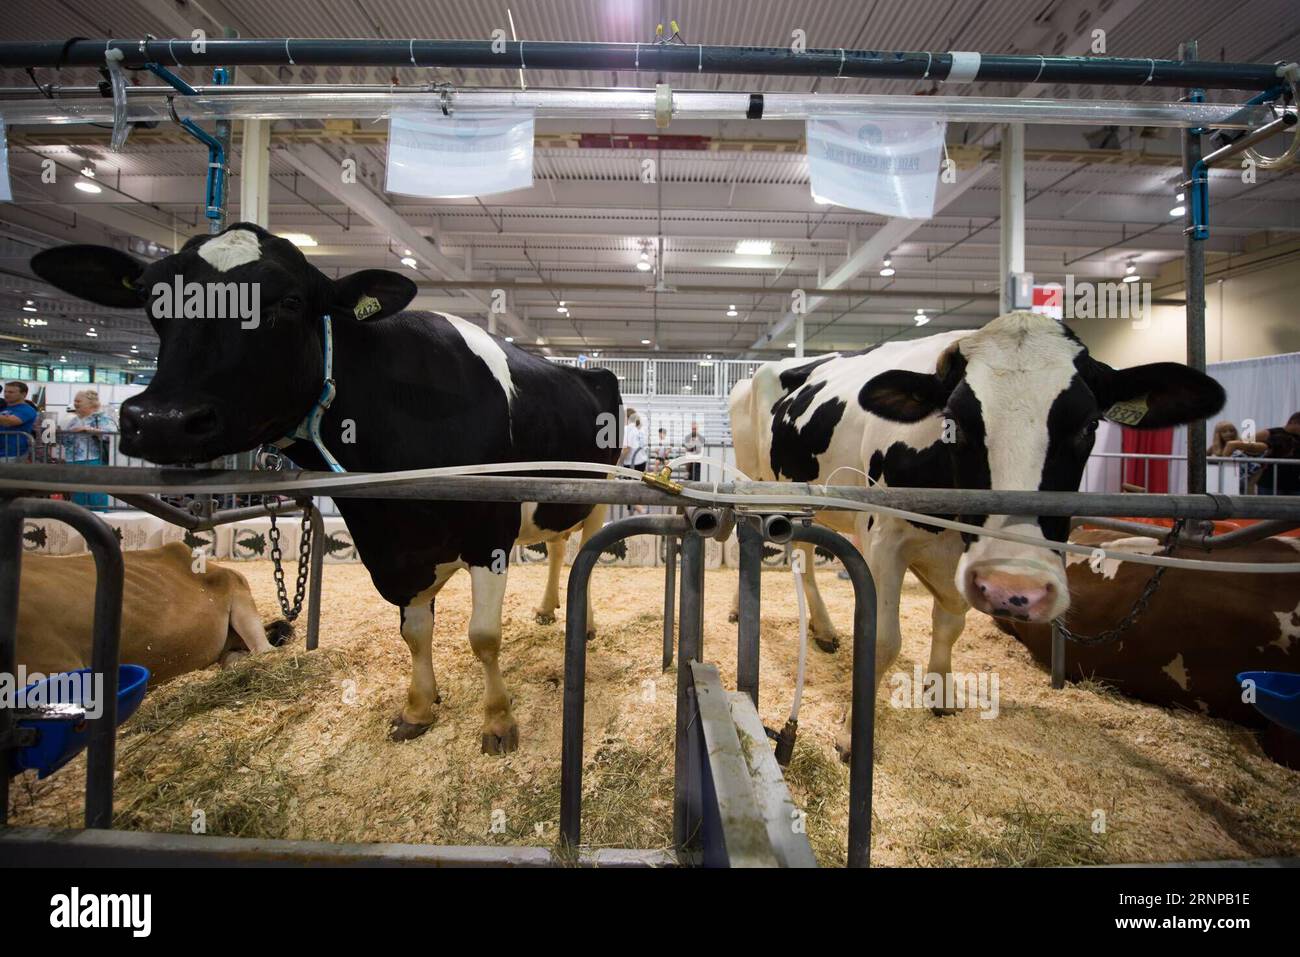 (170819) -- TORONTO (CANADA), le 19 août 2017 -- des vaches laitières de l'Ontario sont vues à l'exposition nationale canadienne à Toronto, Canada, le 18 août 2017. Les États-Unis ont ouvert mercredi la renégociation de l’Accord de libre-échange nord-américain (ALENA), vieux de 23 ans, avec une déclaration selon laquelle ils veulent des changements majeurs à l’accord qui modifient la balance commerciale. Toutefois, les propriétaires d’entreprises canadiennes espèrent que les négociateurs américains seront réceptifs au maintien, sinon à l’amélioration, de la circulation actuelle des marchandises et des travailleurs à la frontière. Bien que l'industrie laitière canadienne ait été exclue de la dea originale de l'ALENA Banque D'Images